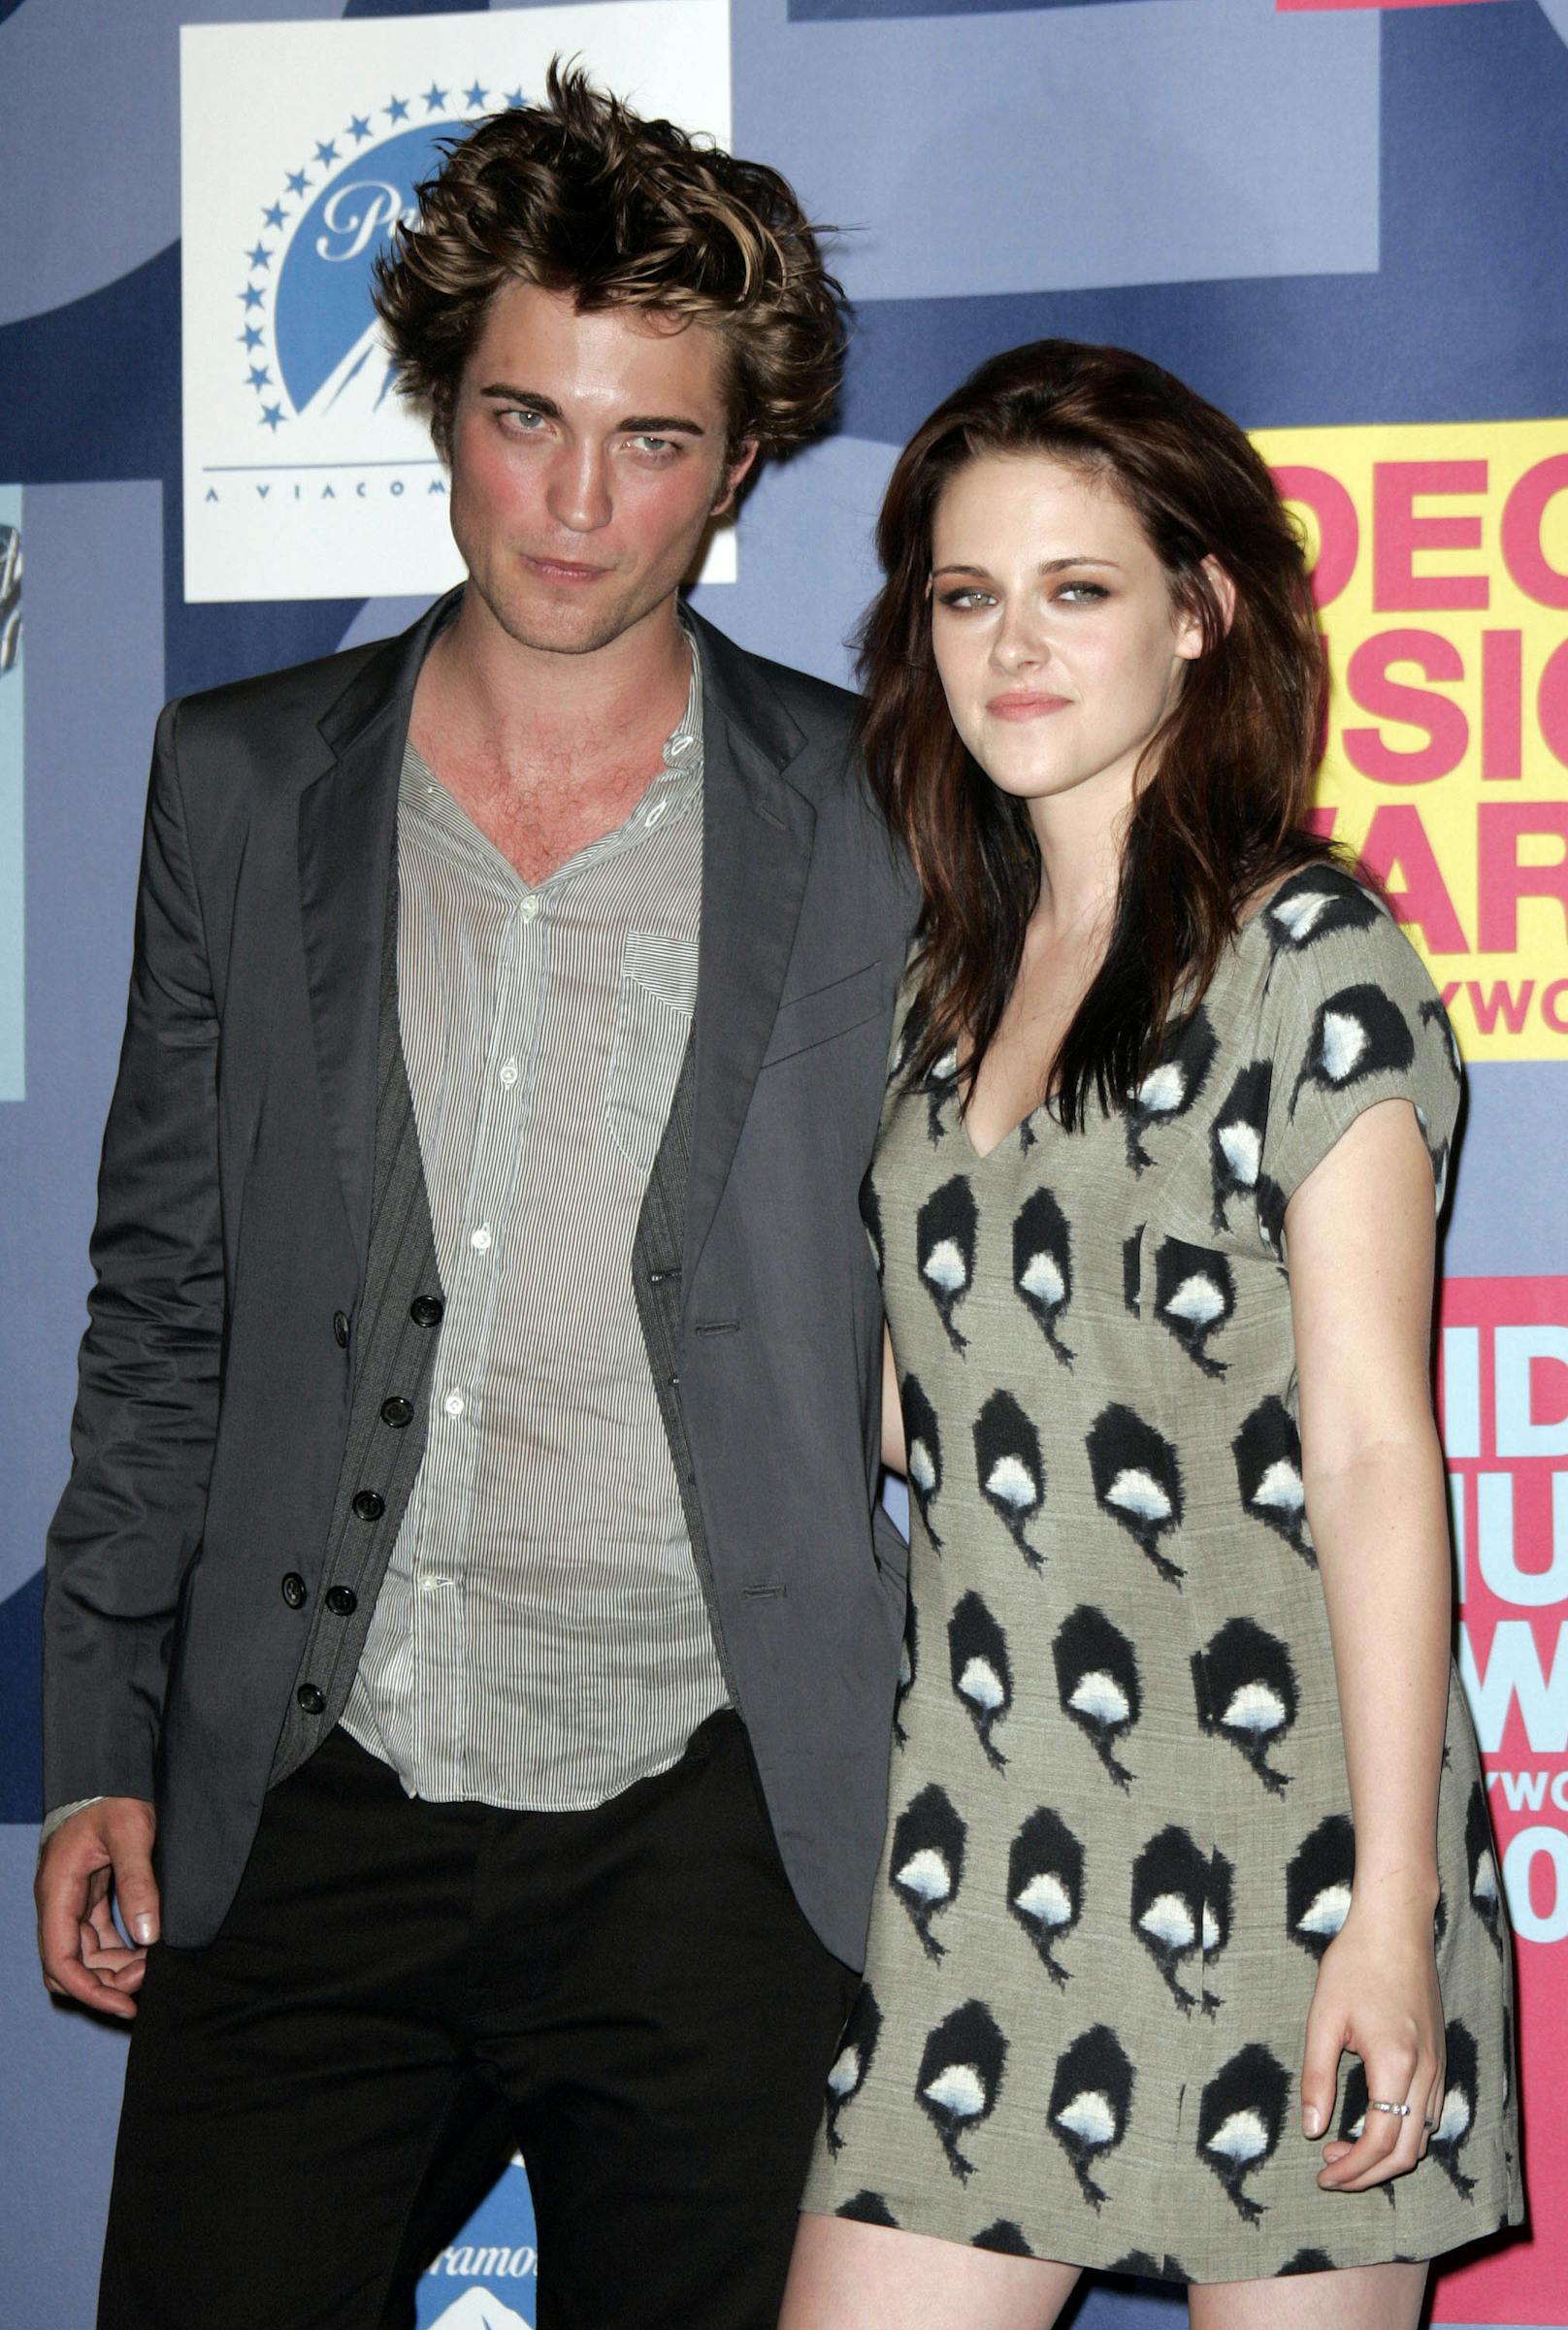 Das Twilight-Traumpaar Kristen Stewart und Robert Pattinson hielt, bis Kristen unter Regisseur Rupert Sanders drehte. Nach pikanten Fotos verließ ihn seine Frau. Rob und Kristen versuchten es noch eine Zeit lang miteinander, aber lang ging auch bei ihnen die Beziehung nicht mehr gut. 